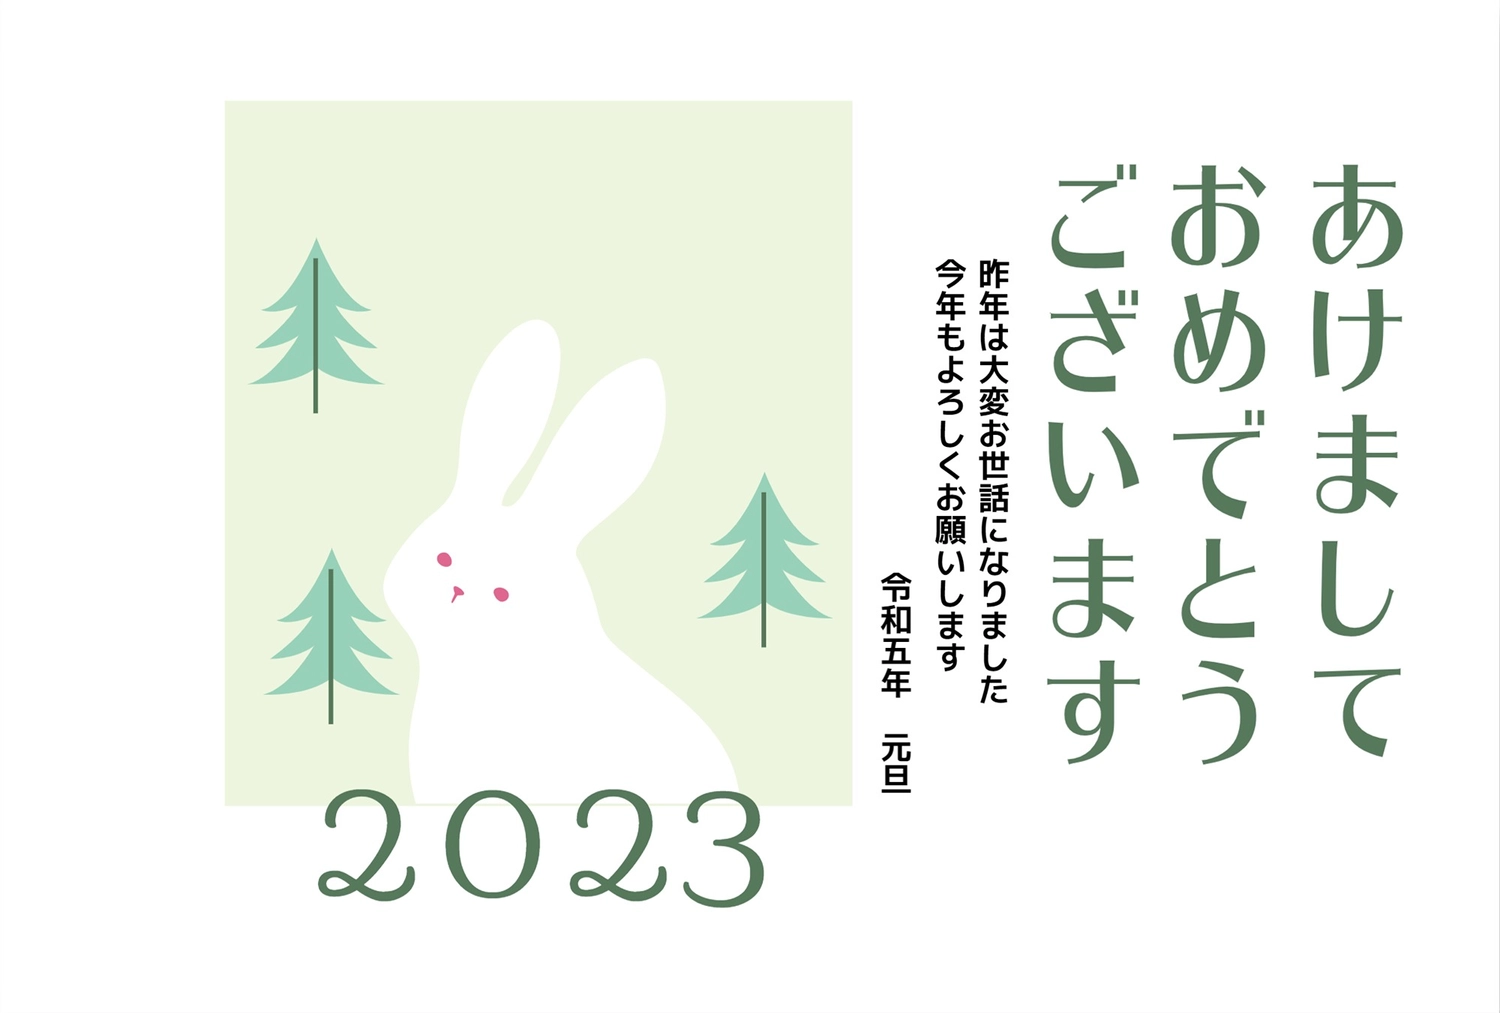 森の中のうさぎ年賀状, Thiệp chúc mừng năm mới, 令和, Thỏ trắng, Thiệp năm mới mẫu